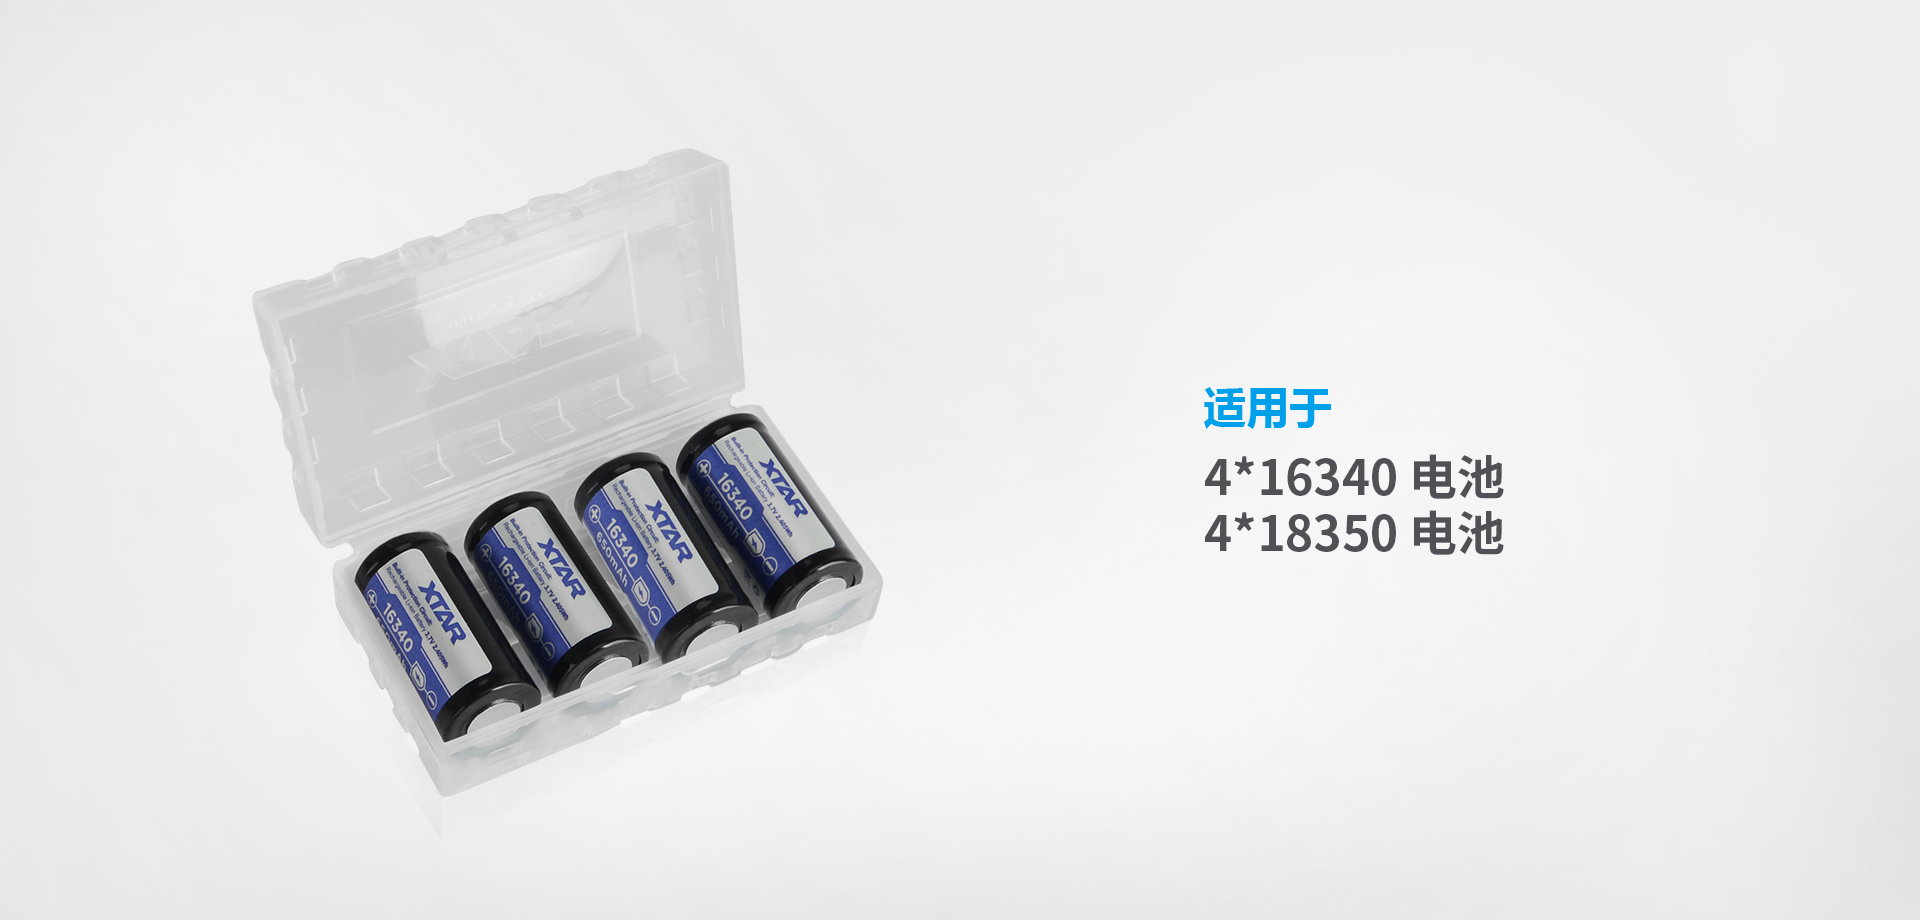 XTAR 18650电池盒